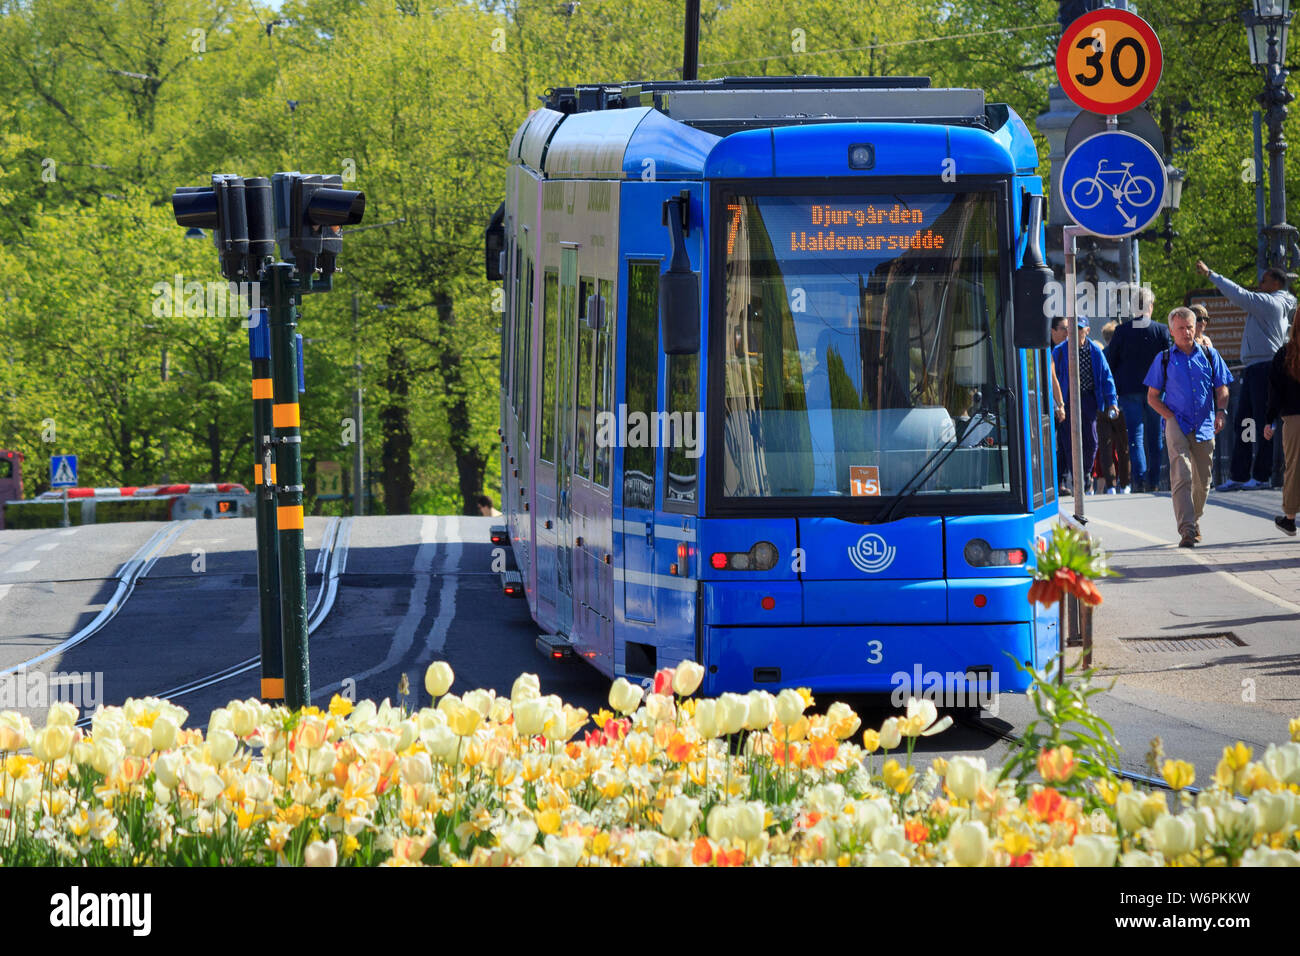 Storstockholms Lokaltrafik SL ou ligne de tramway bleu, plus de Djurgårdsbron. 'Public Tvarbanan' réseau de transport en Suède. Banque D'Images